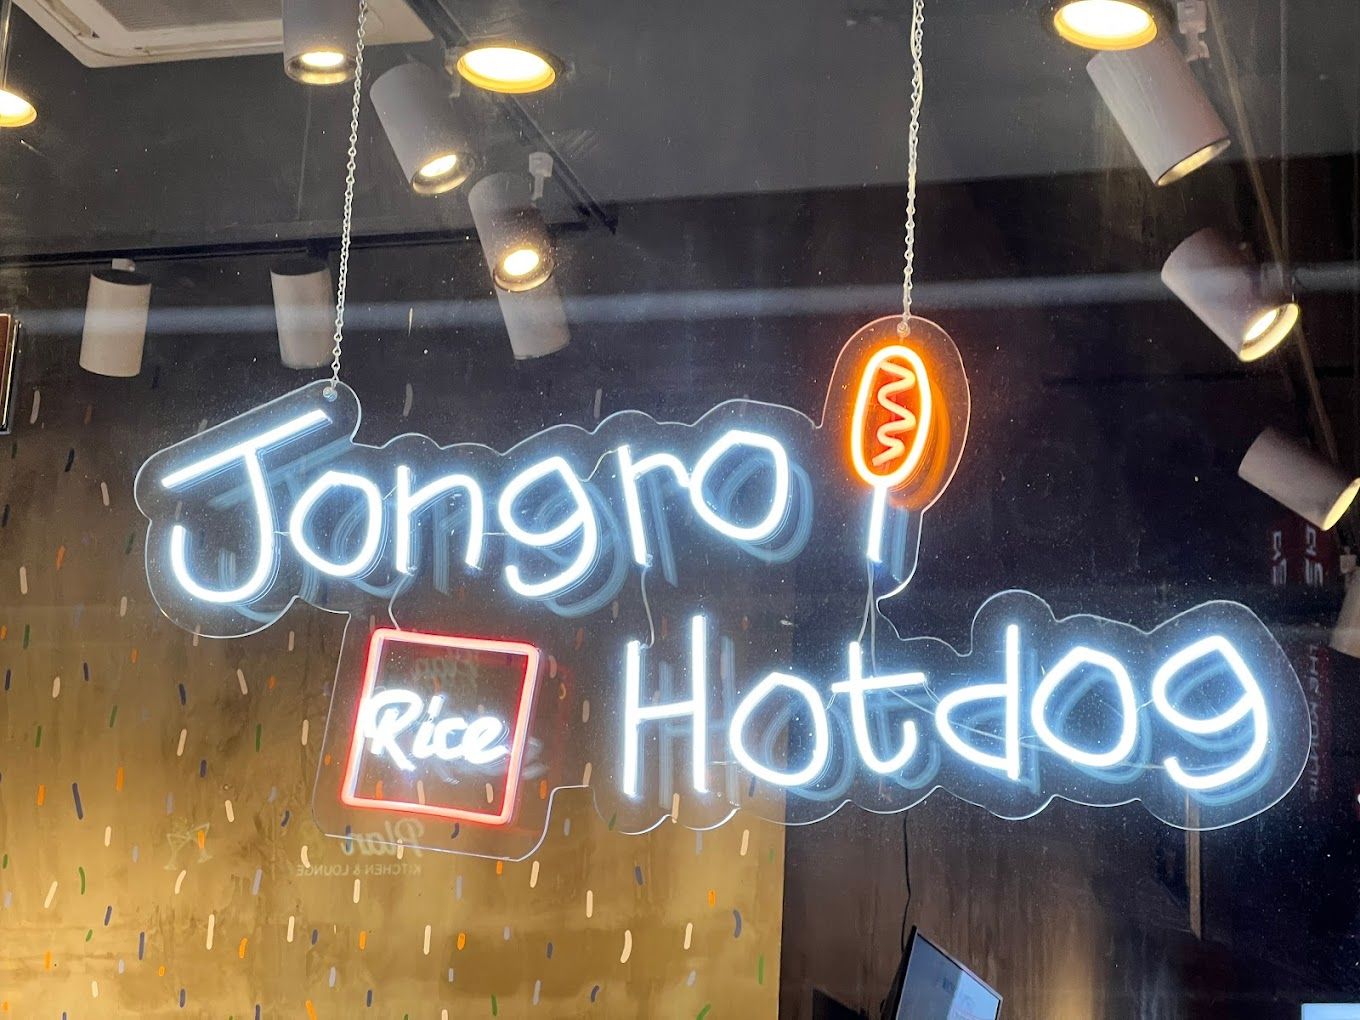 Jongro Rice Hotdog